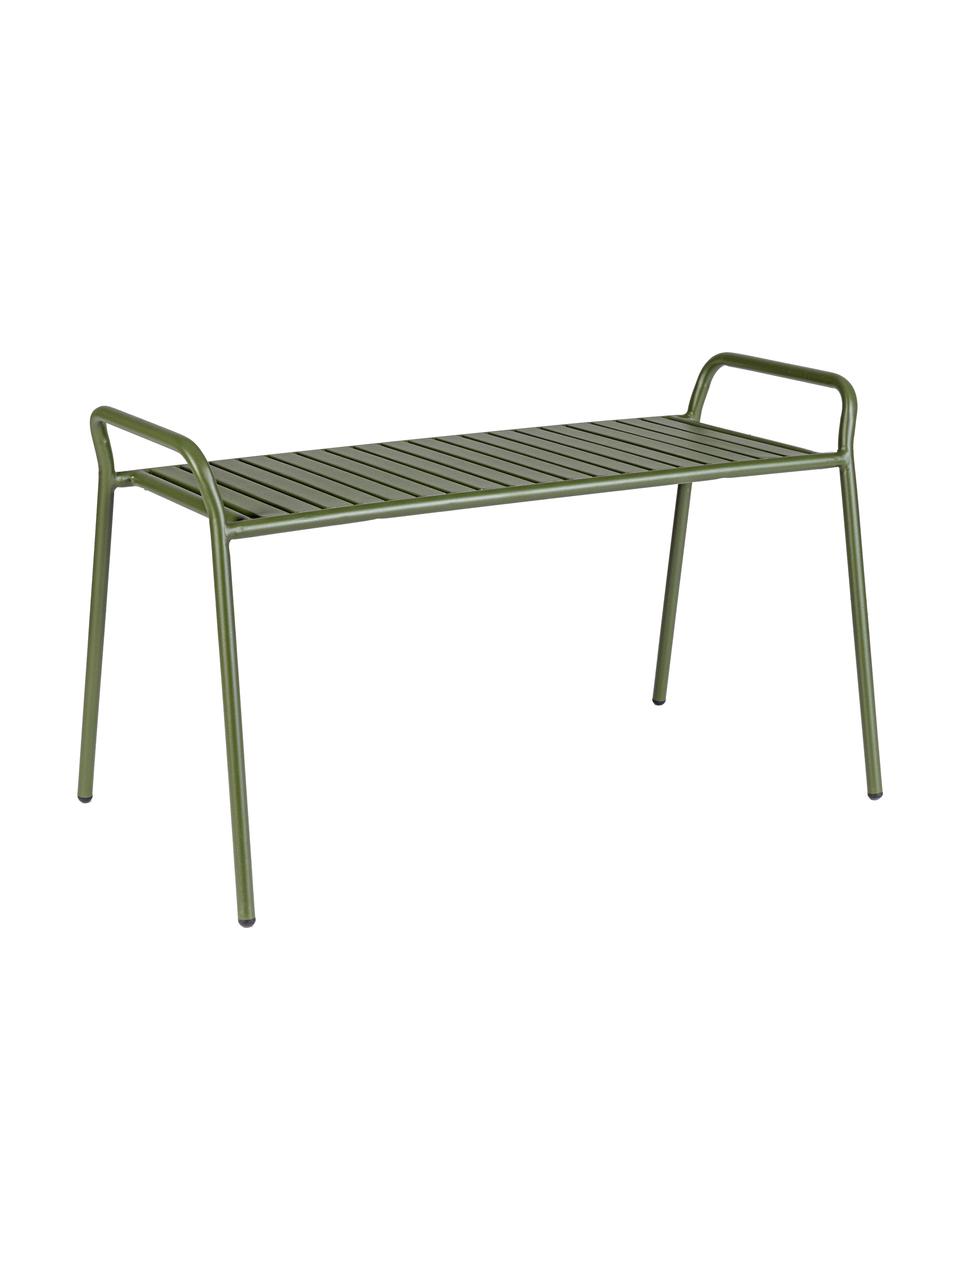 Garten-Sitzbank Dalya aus Metall in Grün, Stahl, pulverbeschichtet, Grün, B 88 x H 51 cm